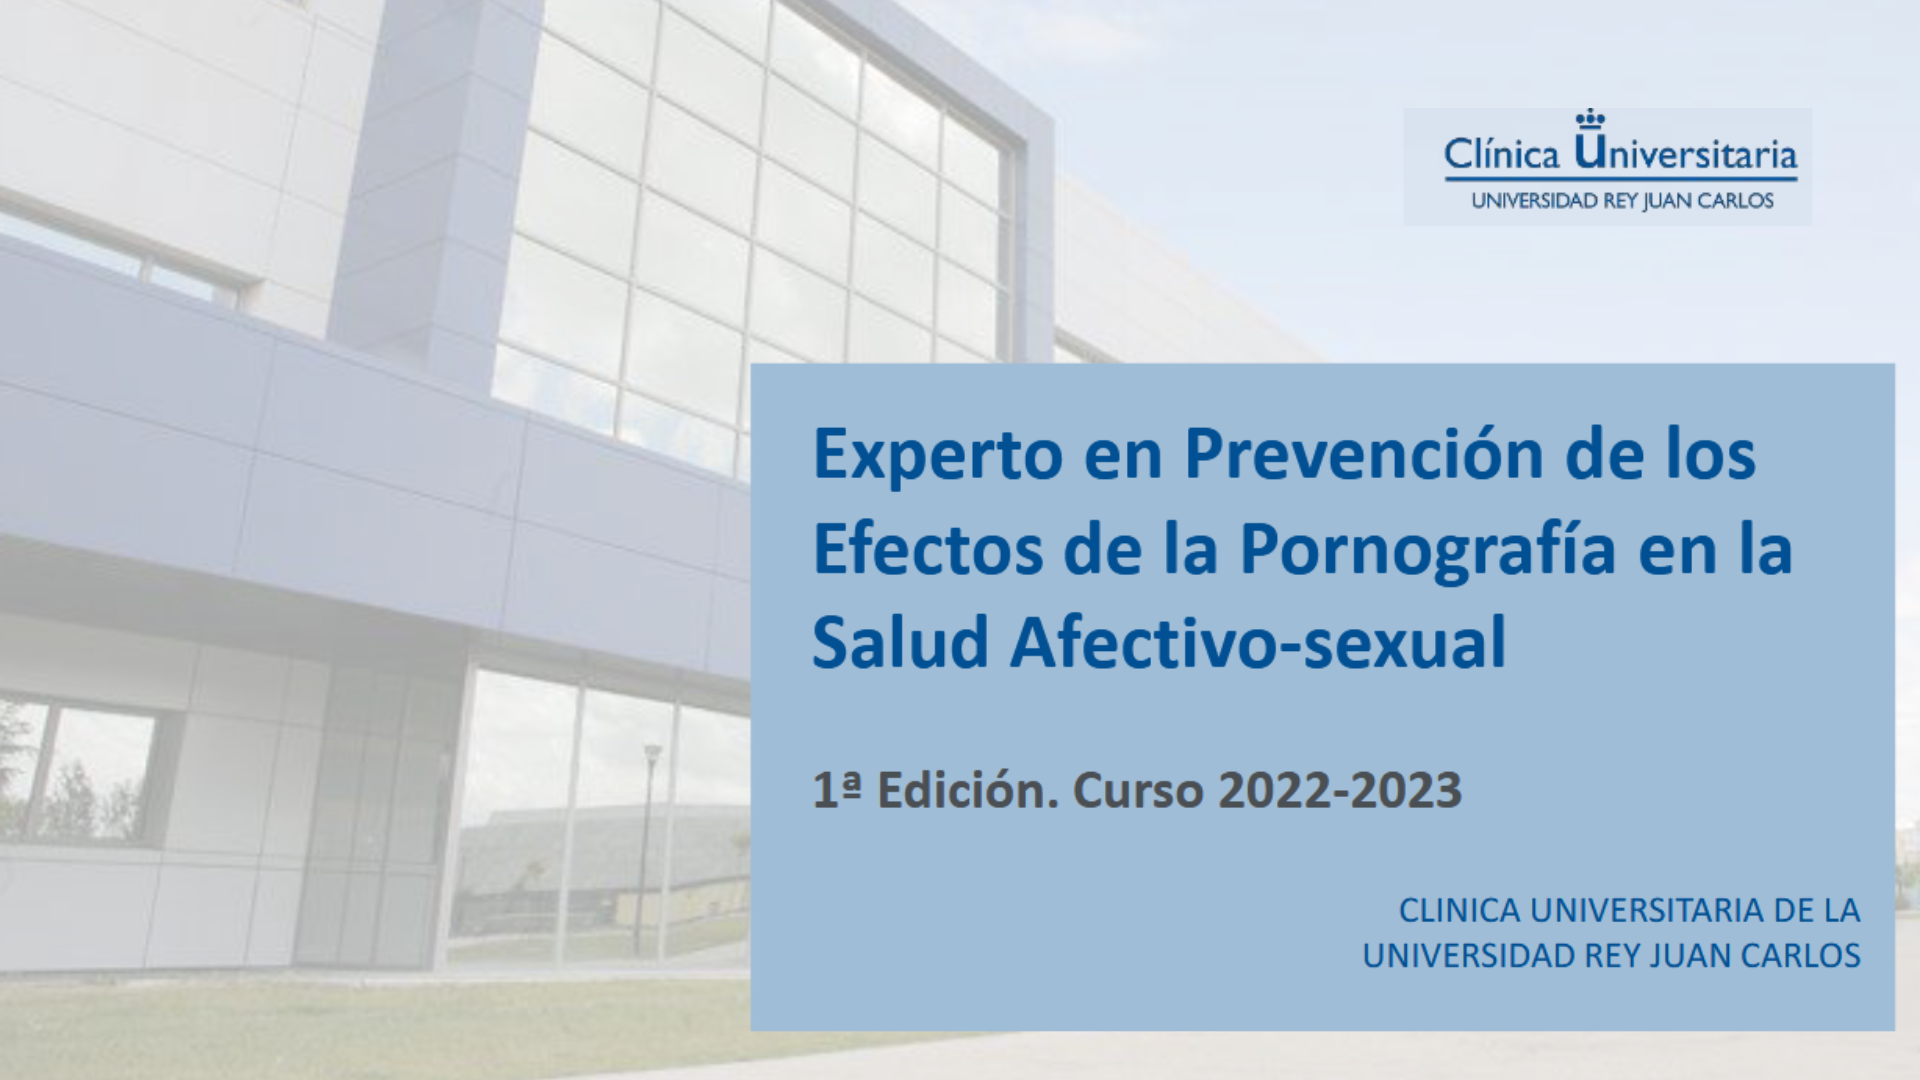 Curso Experto/a en Prevención de los Efectos de la Pornografía en la Salud Afectivo-sexual